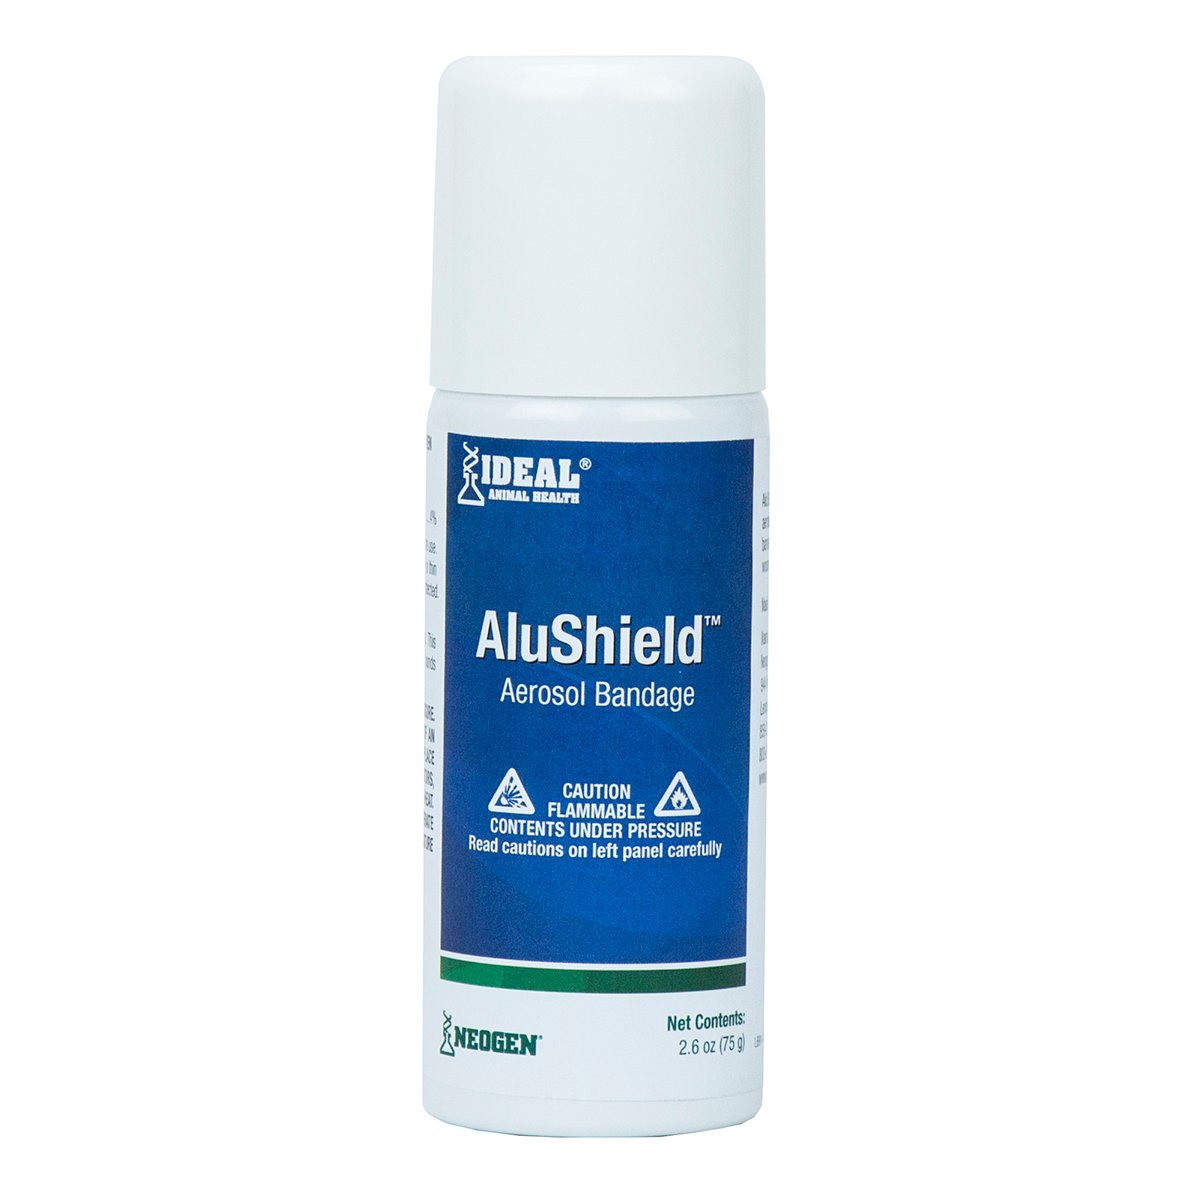 AluShield Aerosol Bandage - 2.6oz